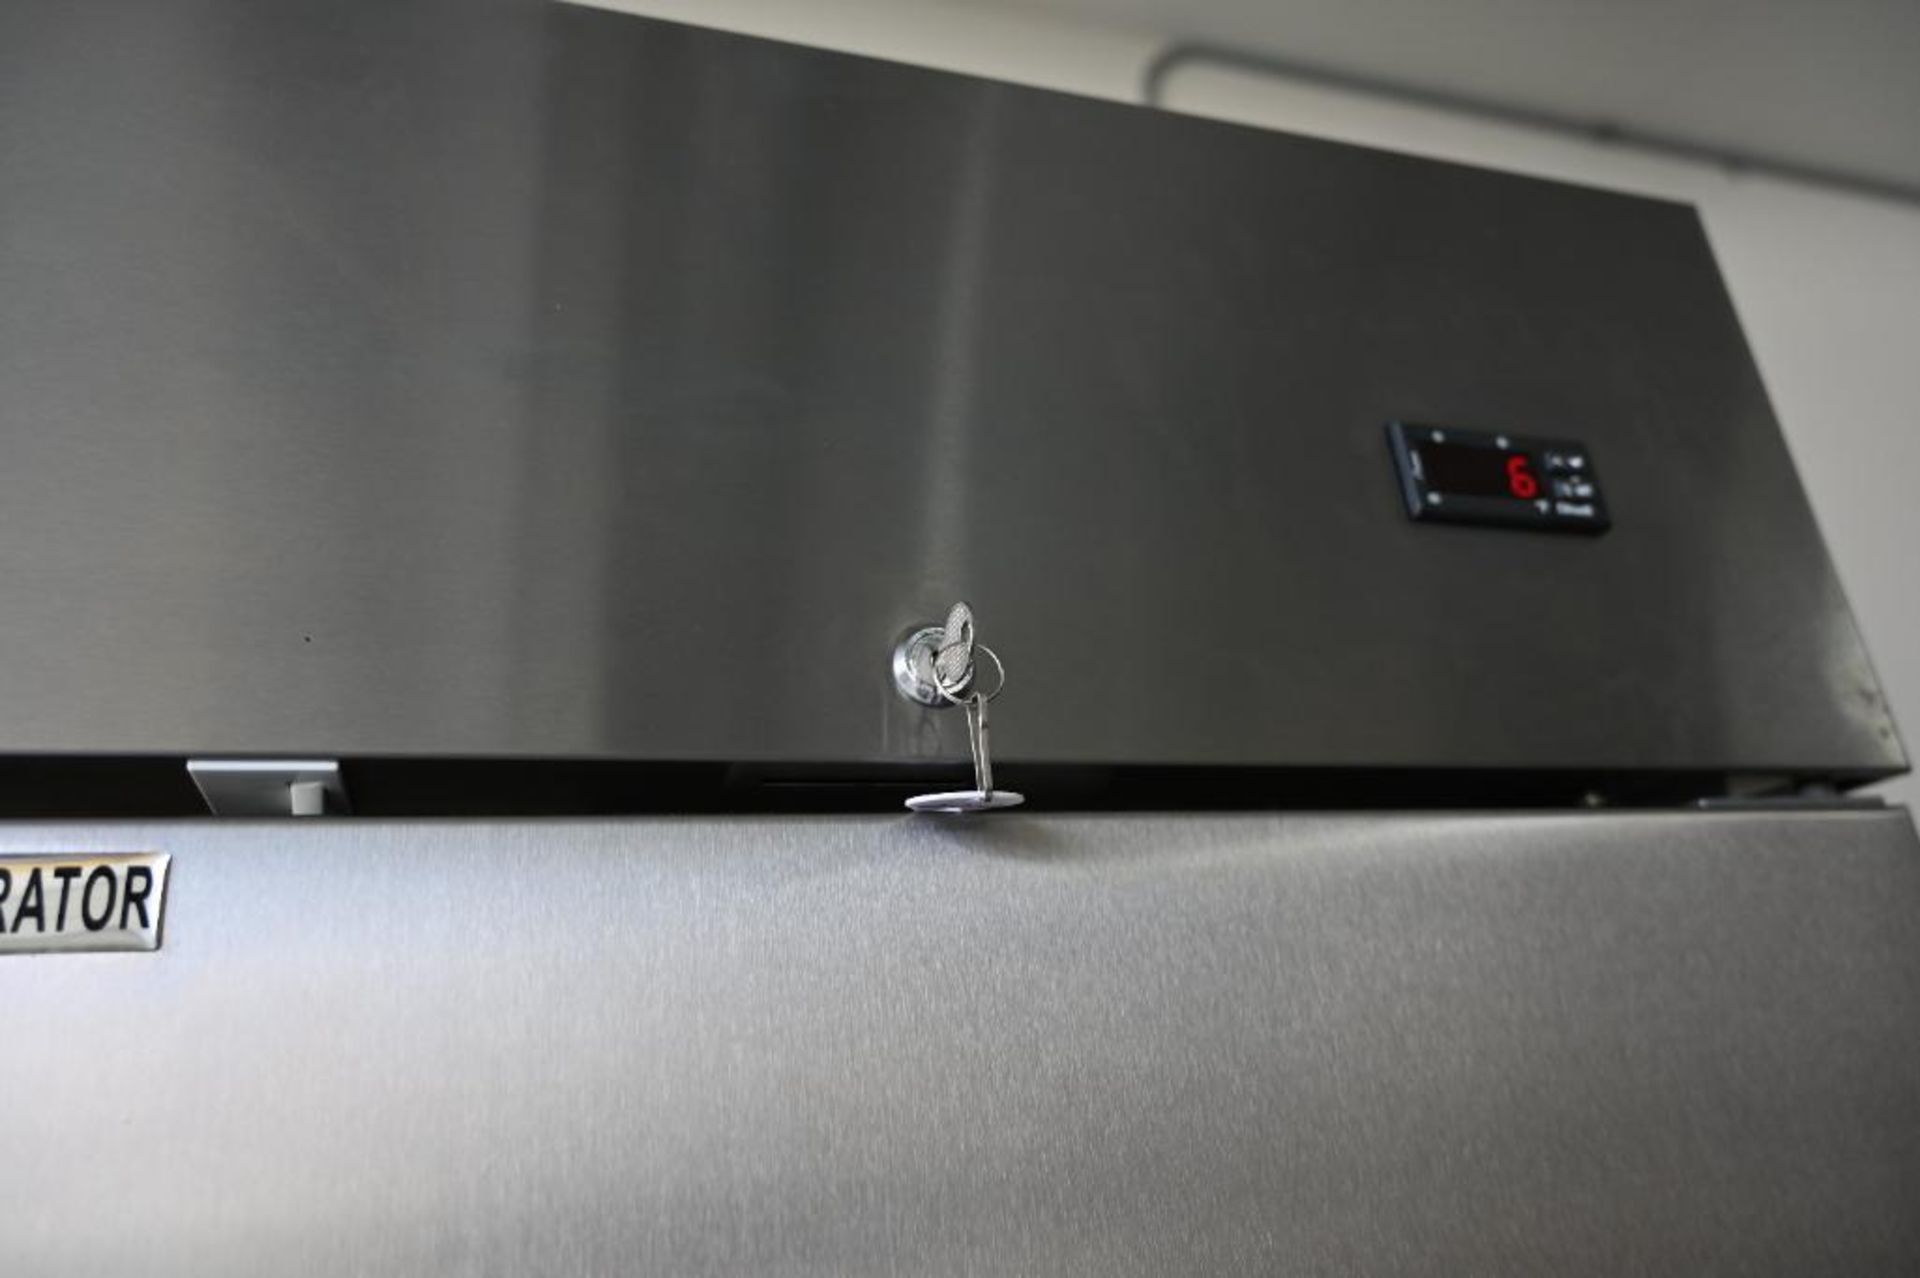 Empura model EKB54R Stainless Commercial Refrigerator - Image 4 of 14